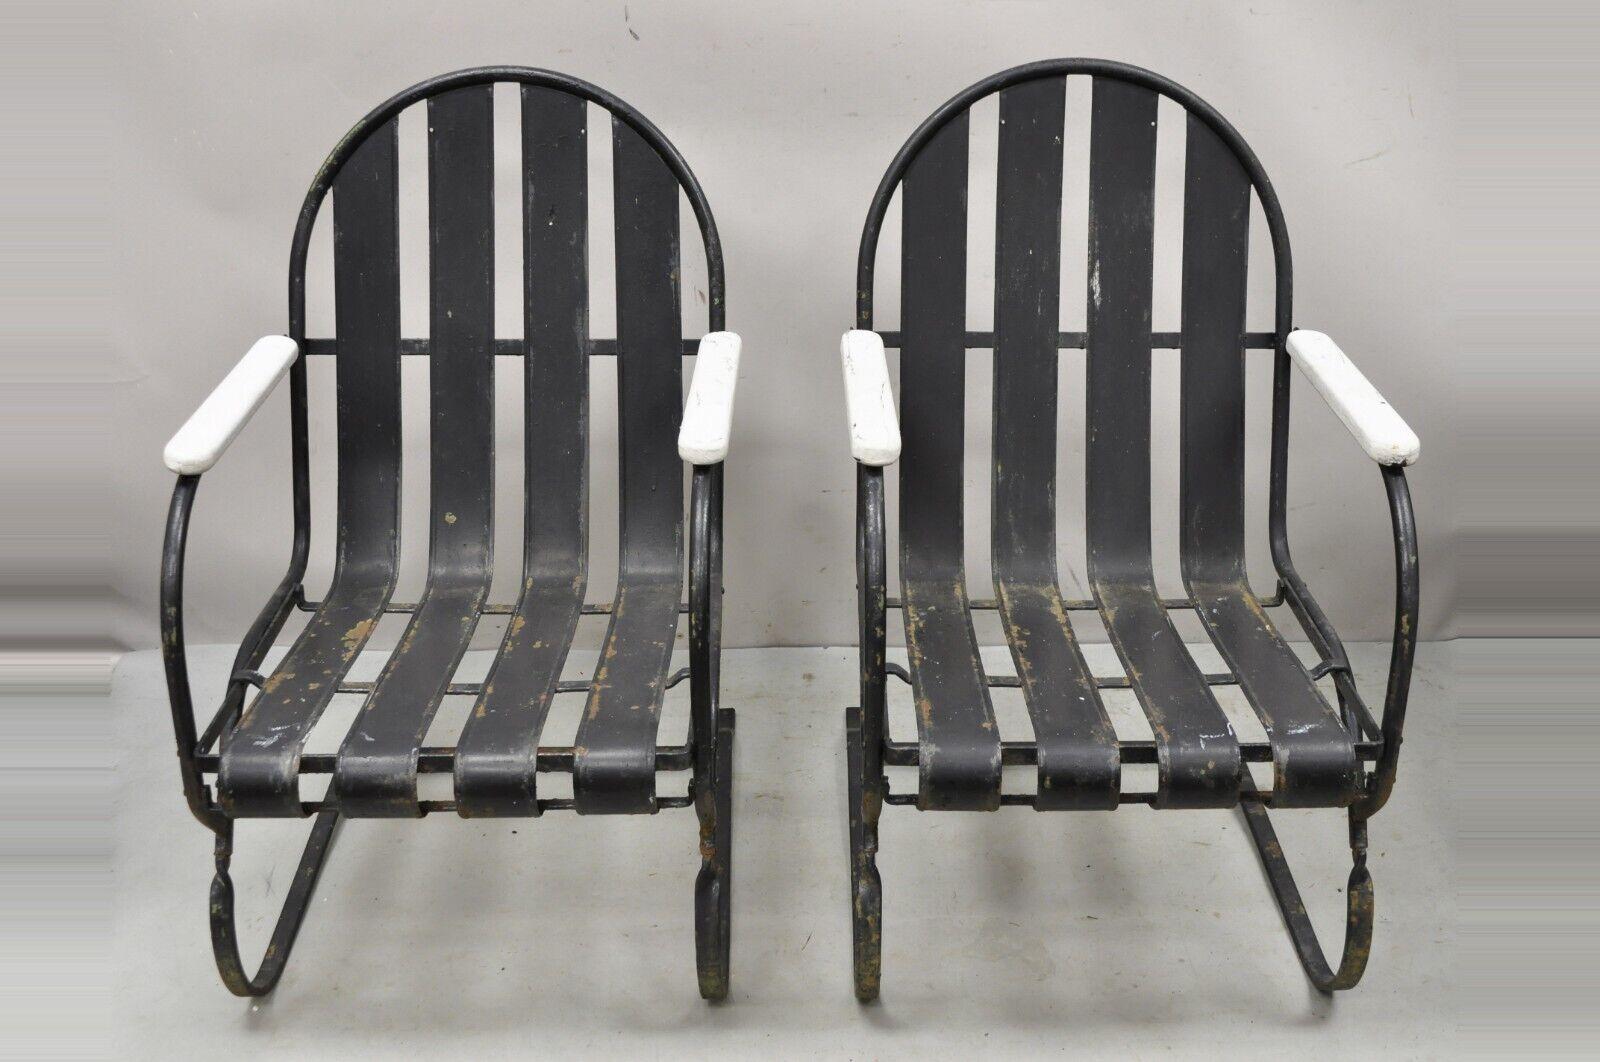 Pair Vintage Art Deco Schwarz und Weiß Stahl Lamellen Patio Bouncer Stühle. Die Armlehnen sind aus weiß lackiertem Holz, der Rahmen aus schwarz lackiertem Metall, ein sehr schönes Paar im Vintage-Stil und in toller Form. CIRCA Anfang bis Mitte des